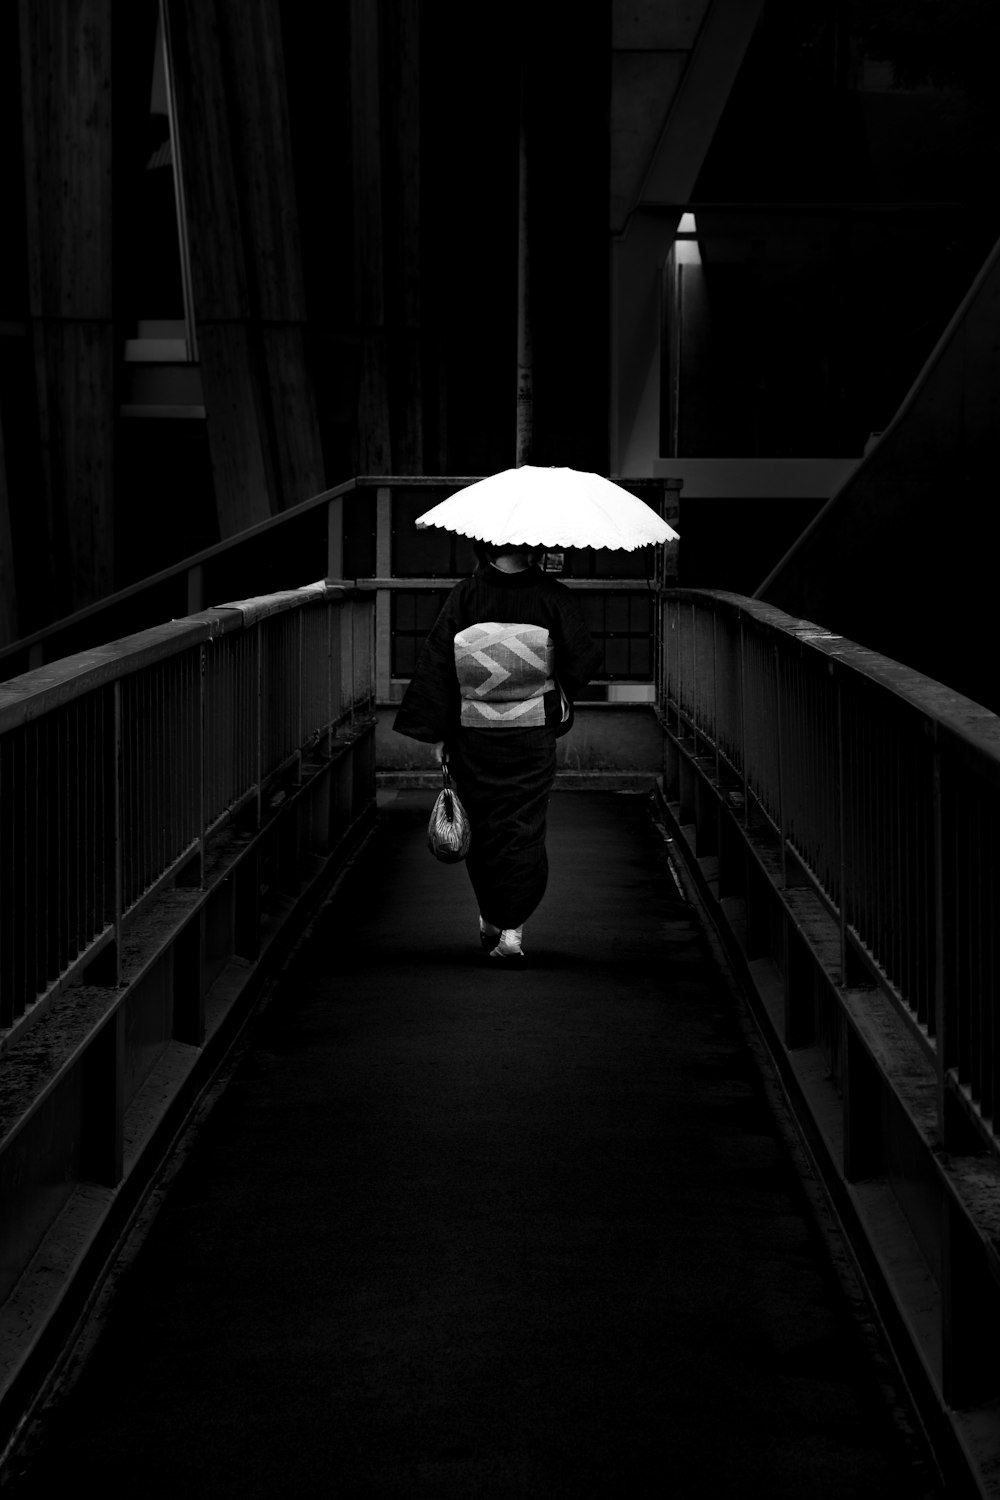 웃옷을 입은 남자가 우산을 들고 다리를 걷고 있는 그레이스케일 사진